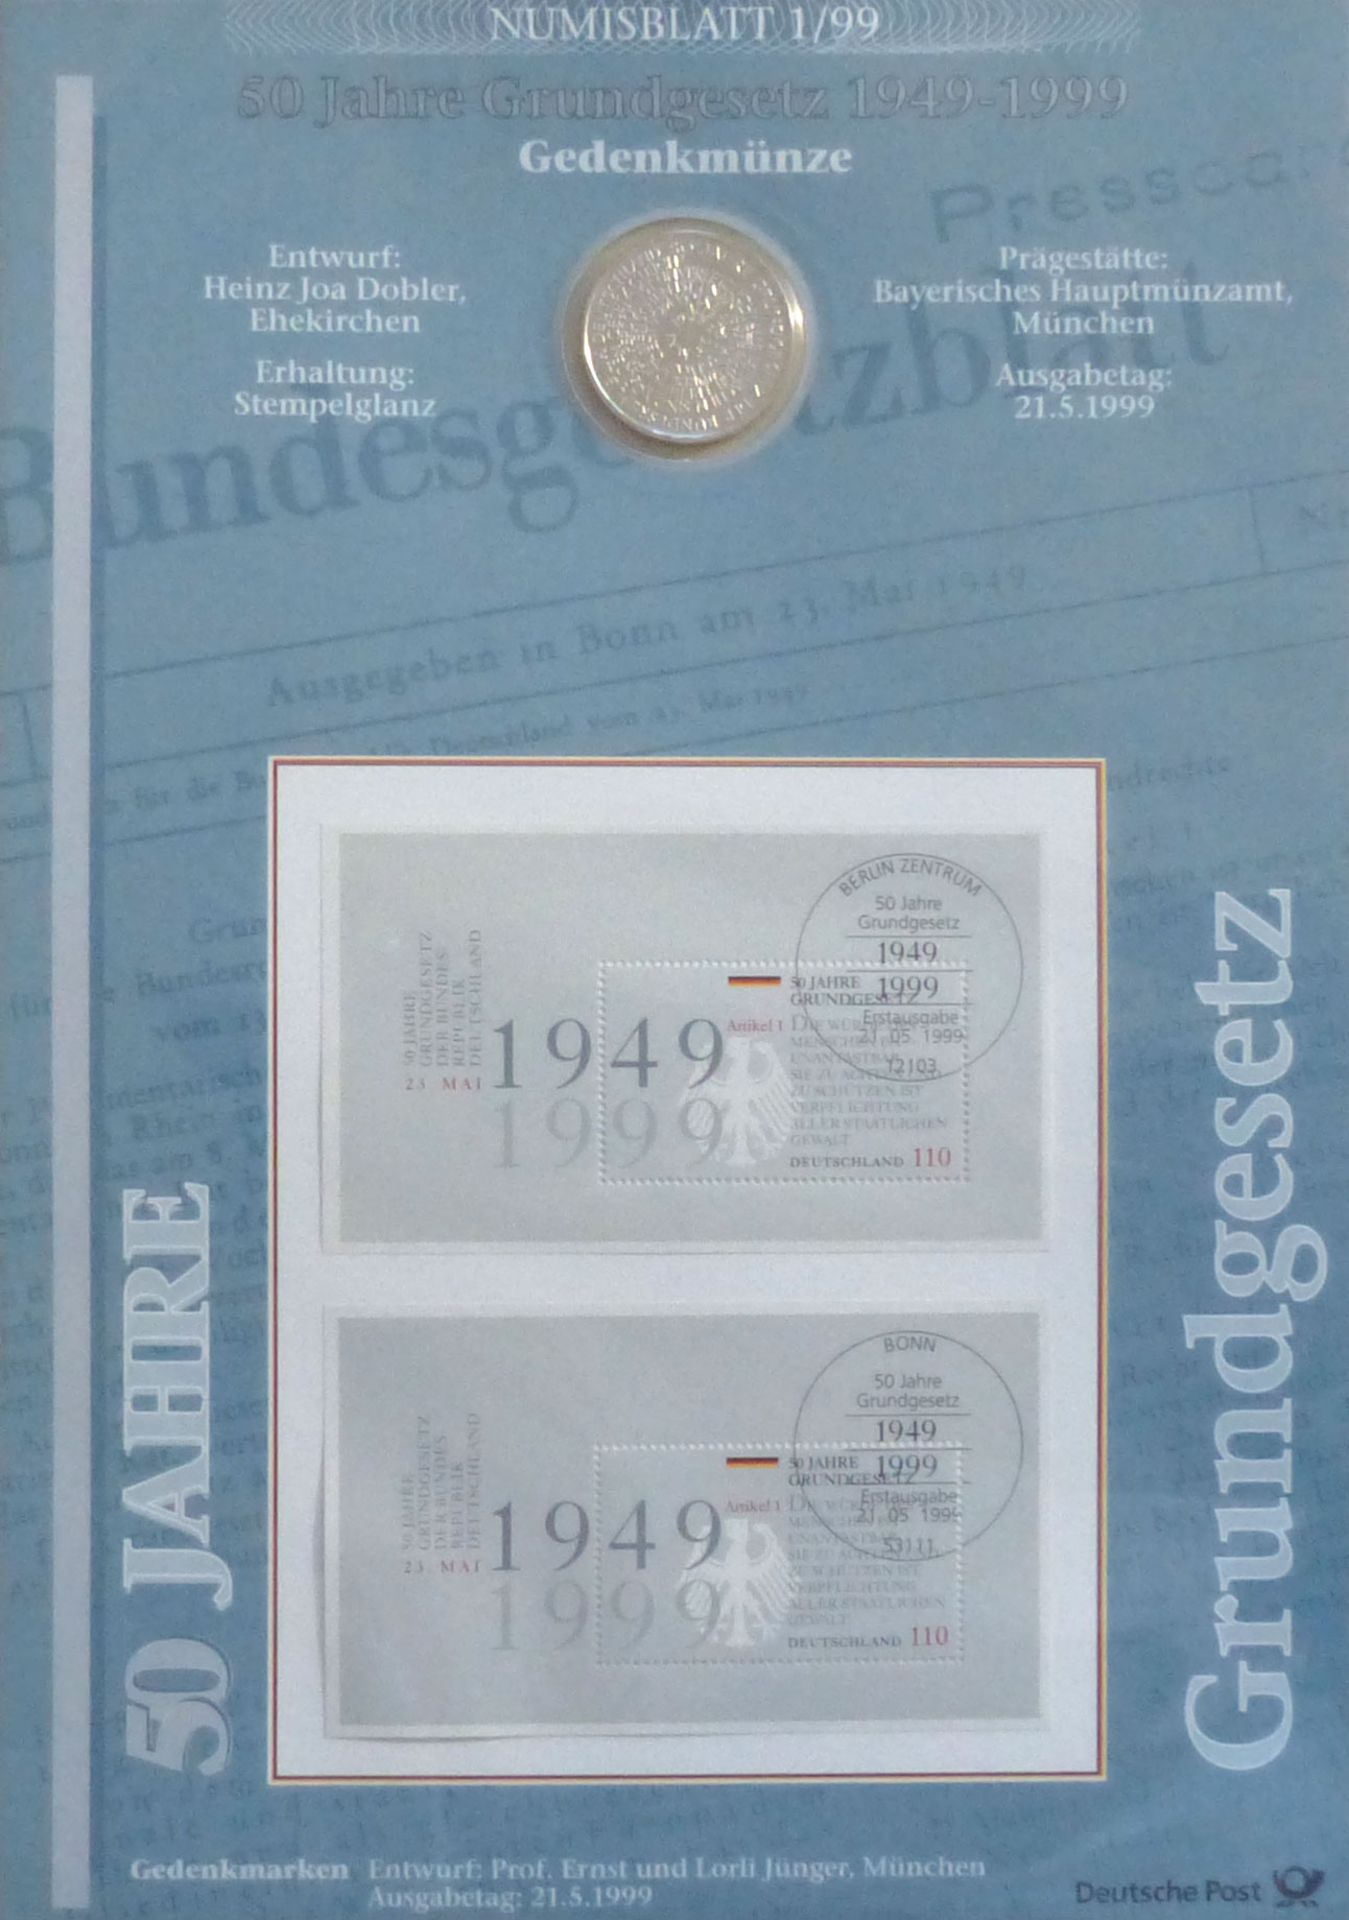 Münzen 1 Album mit 12 Numisblättern der Deutschen Post jeweils mit 10 DM Gedenkmünze und passendem